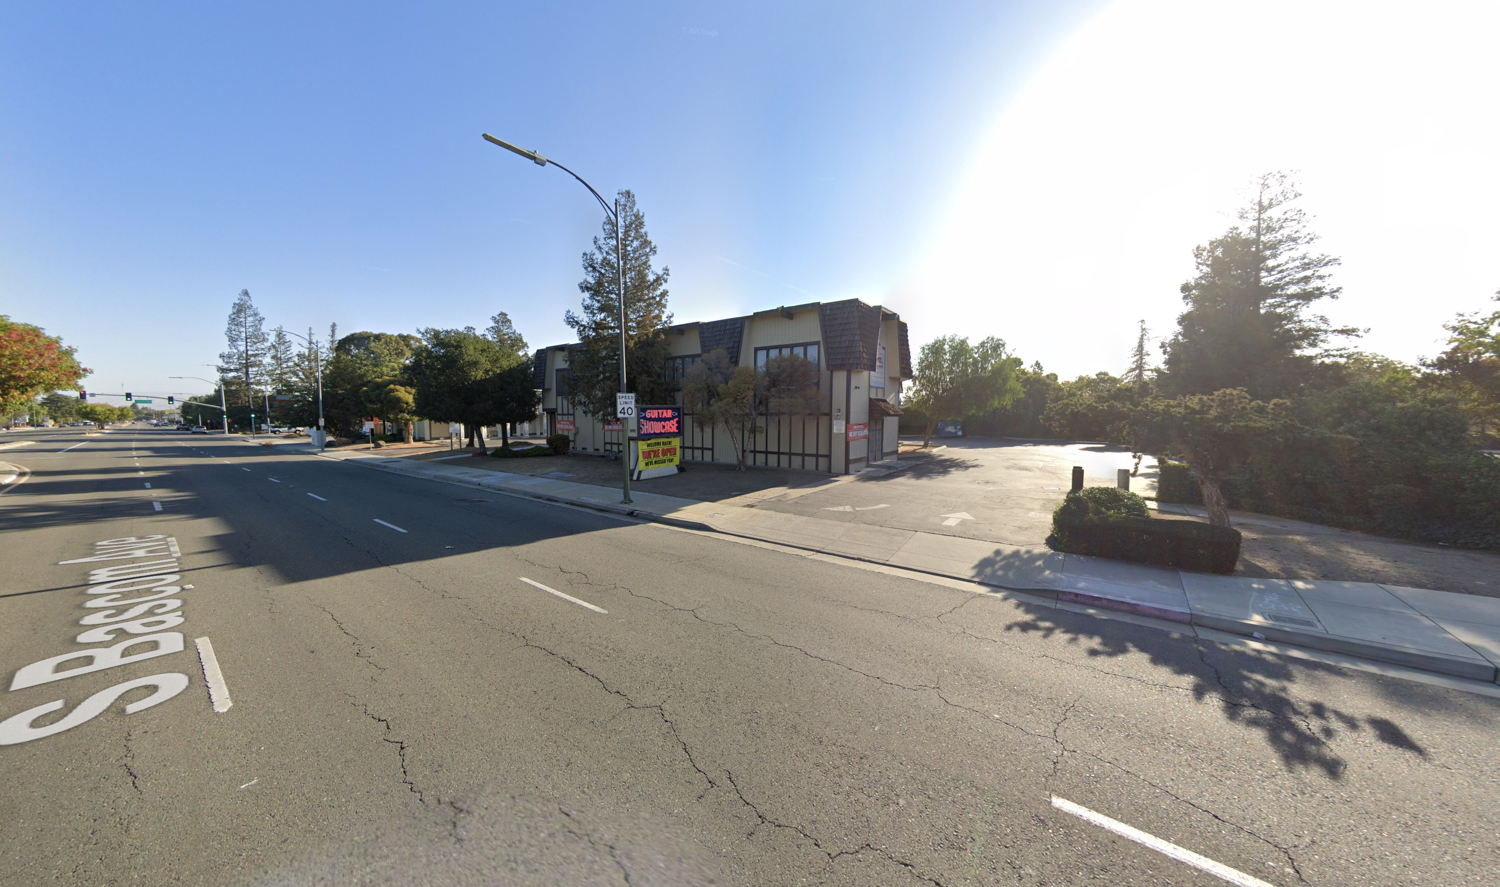 3090 South Bascom Avenue, image via Google Street View